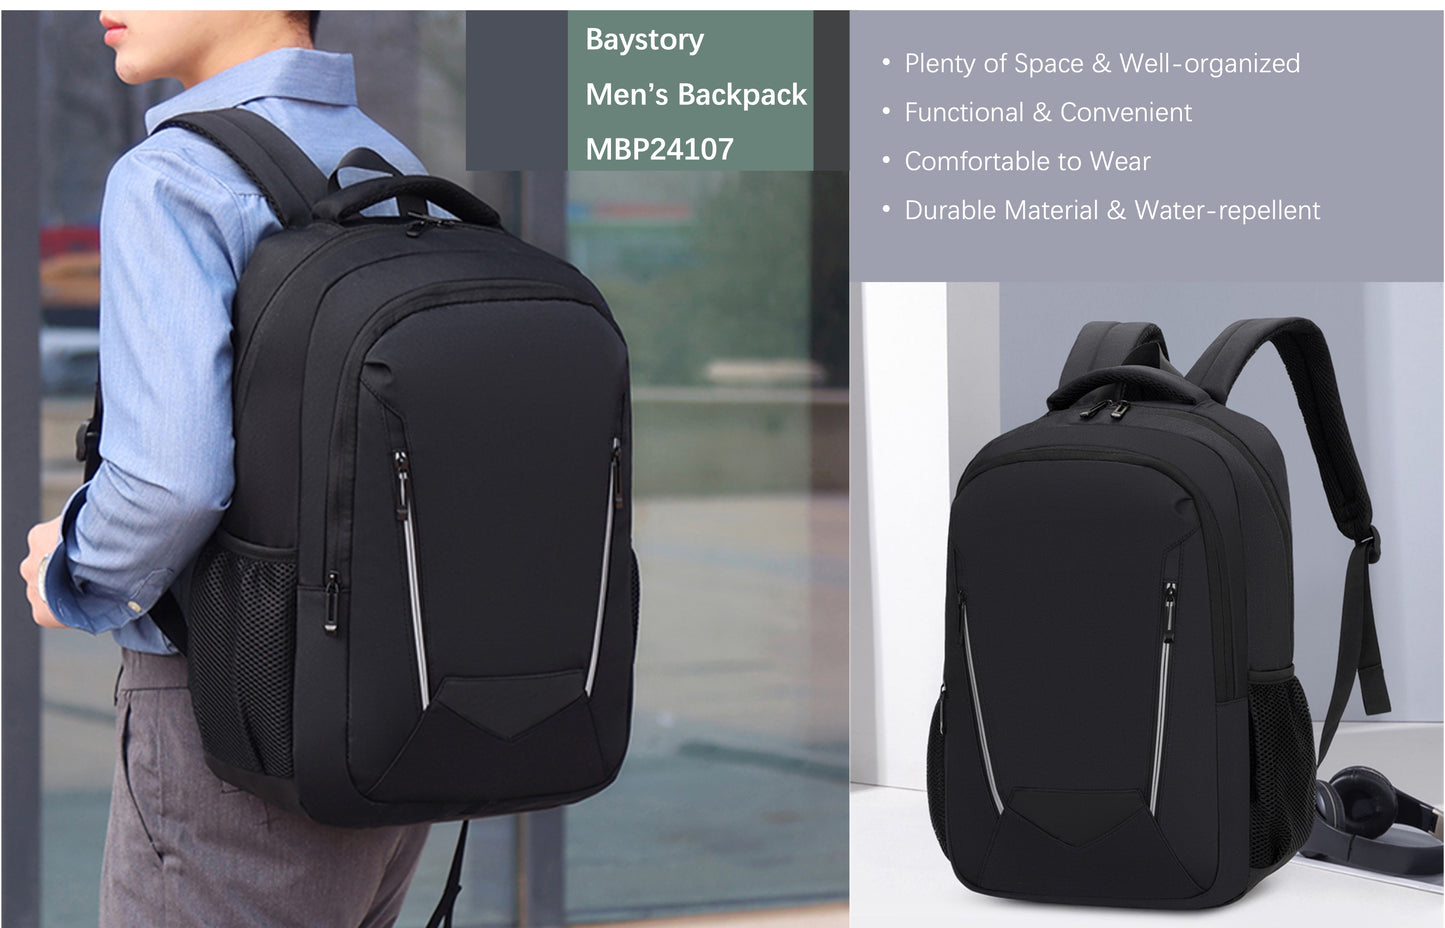 Baystory Men's Backpack MBP24107 - Baystory